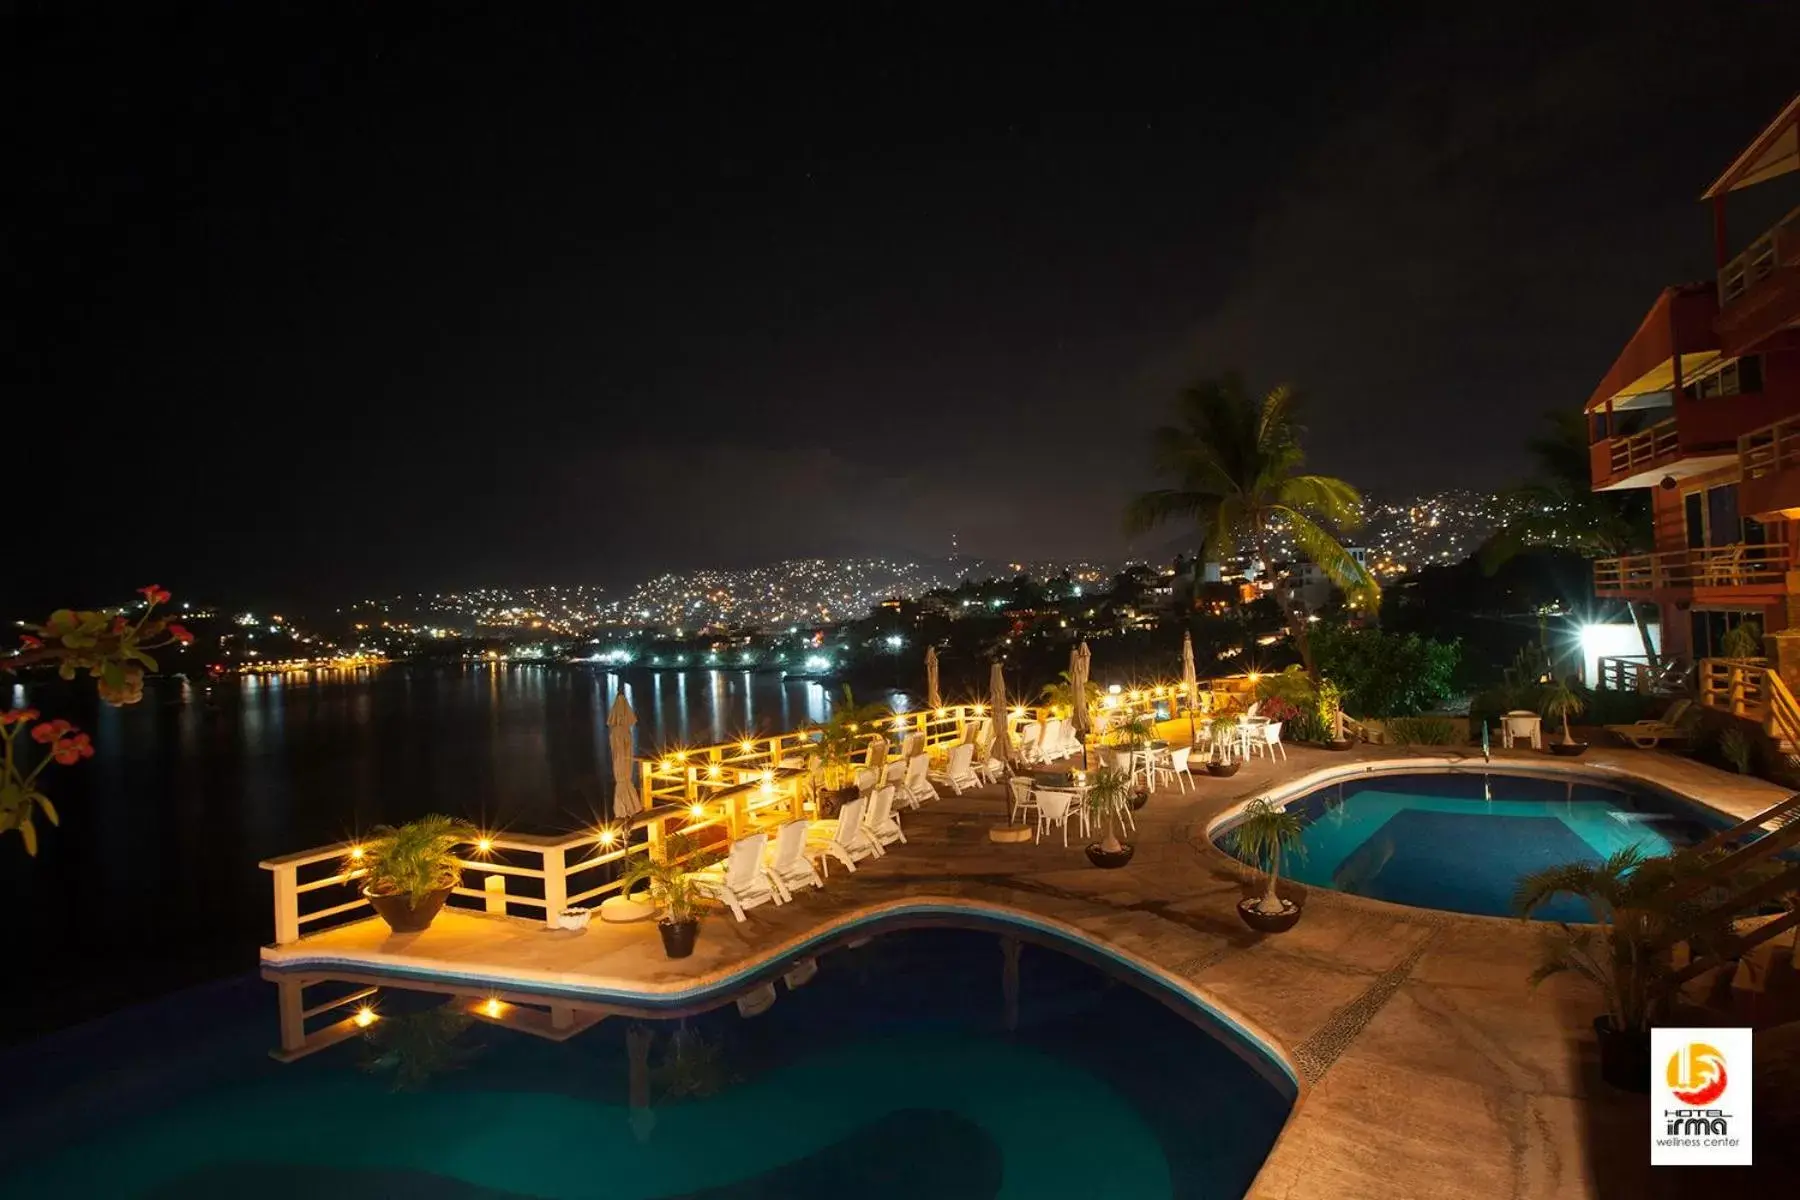 Night, Pool View in Hotel Irma